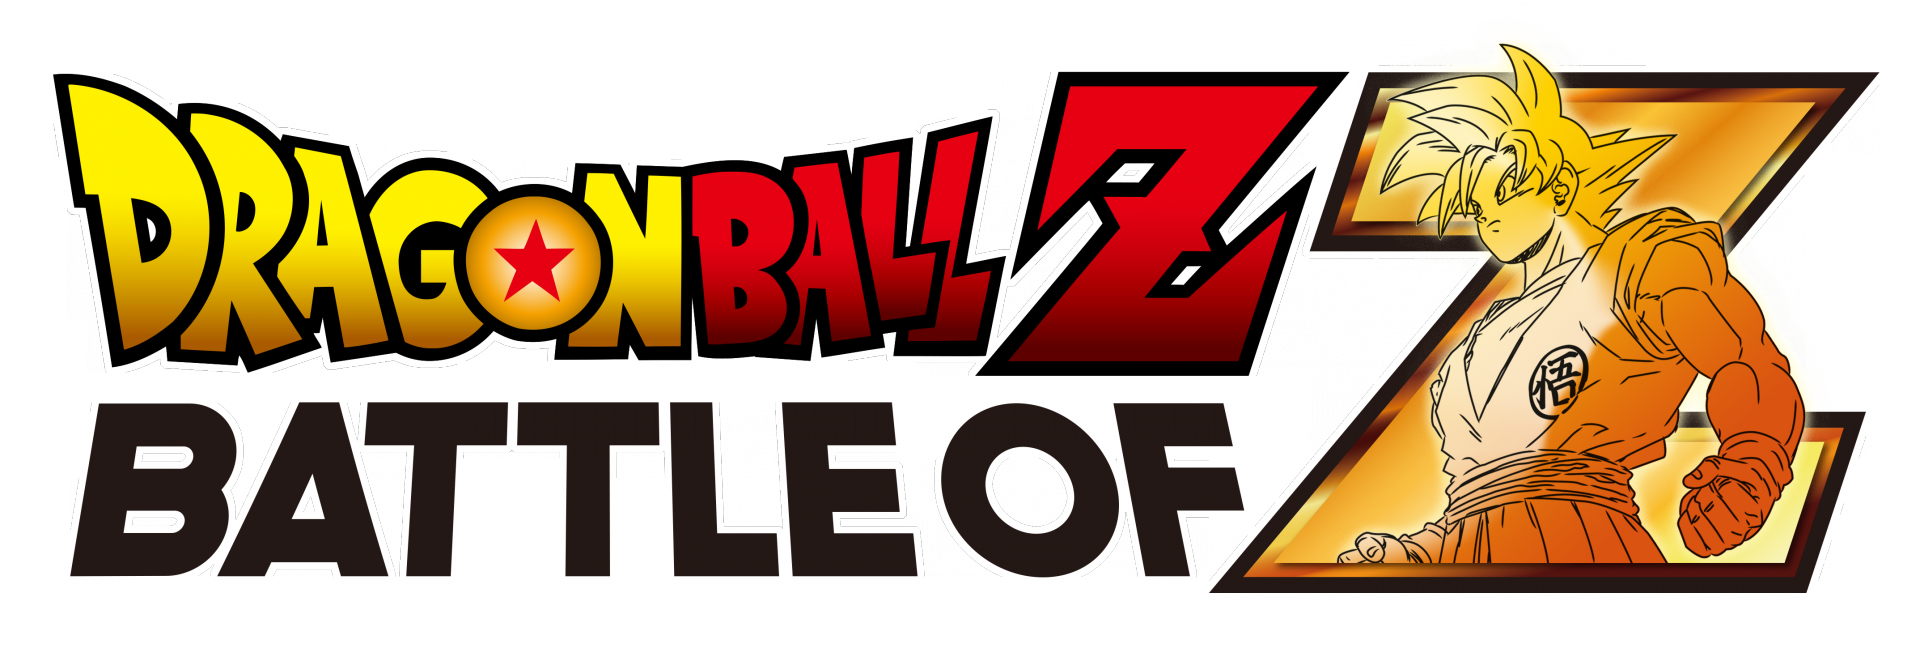 Dragon Ball Z: Battle of Z Logos.